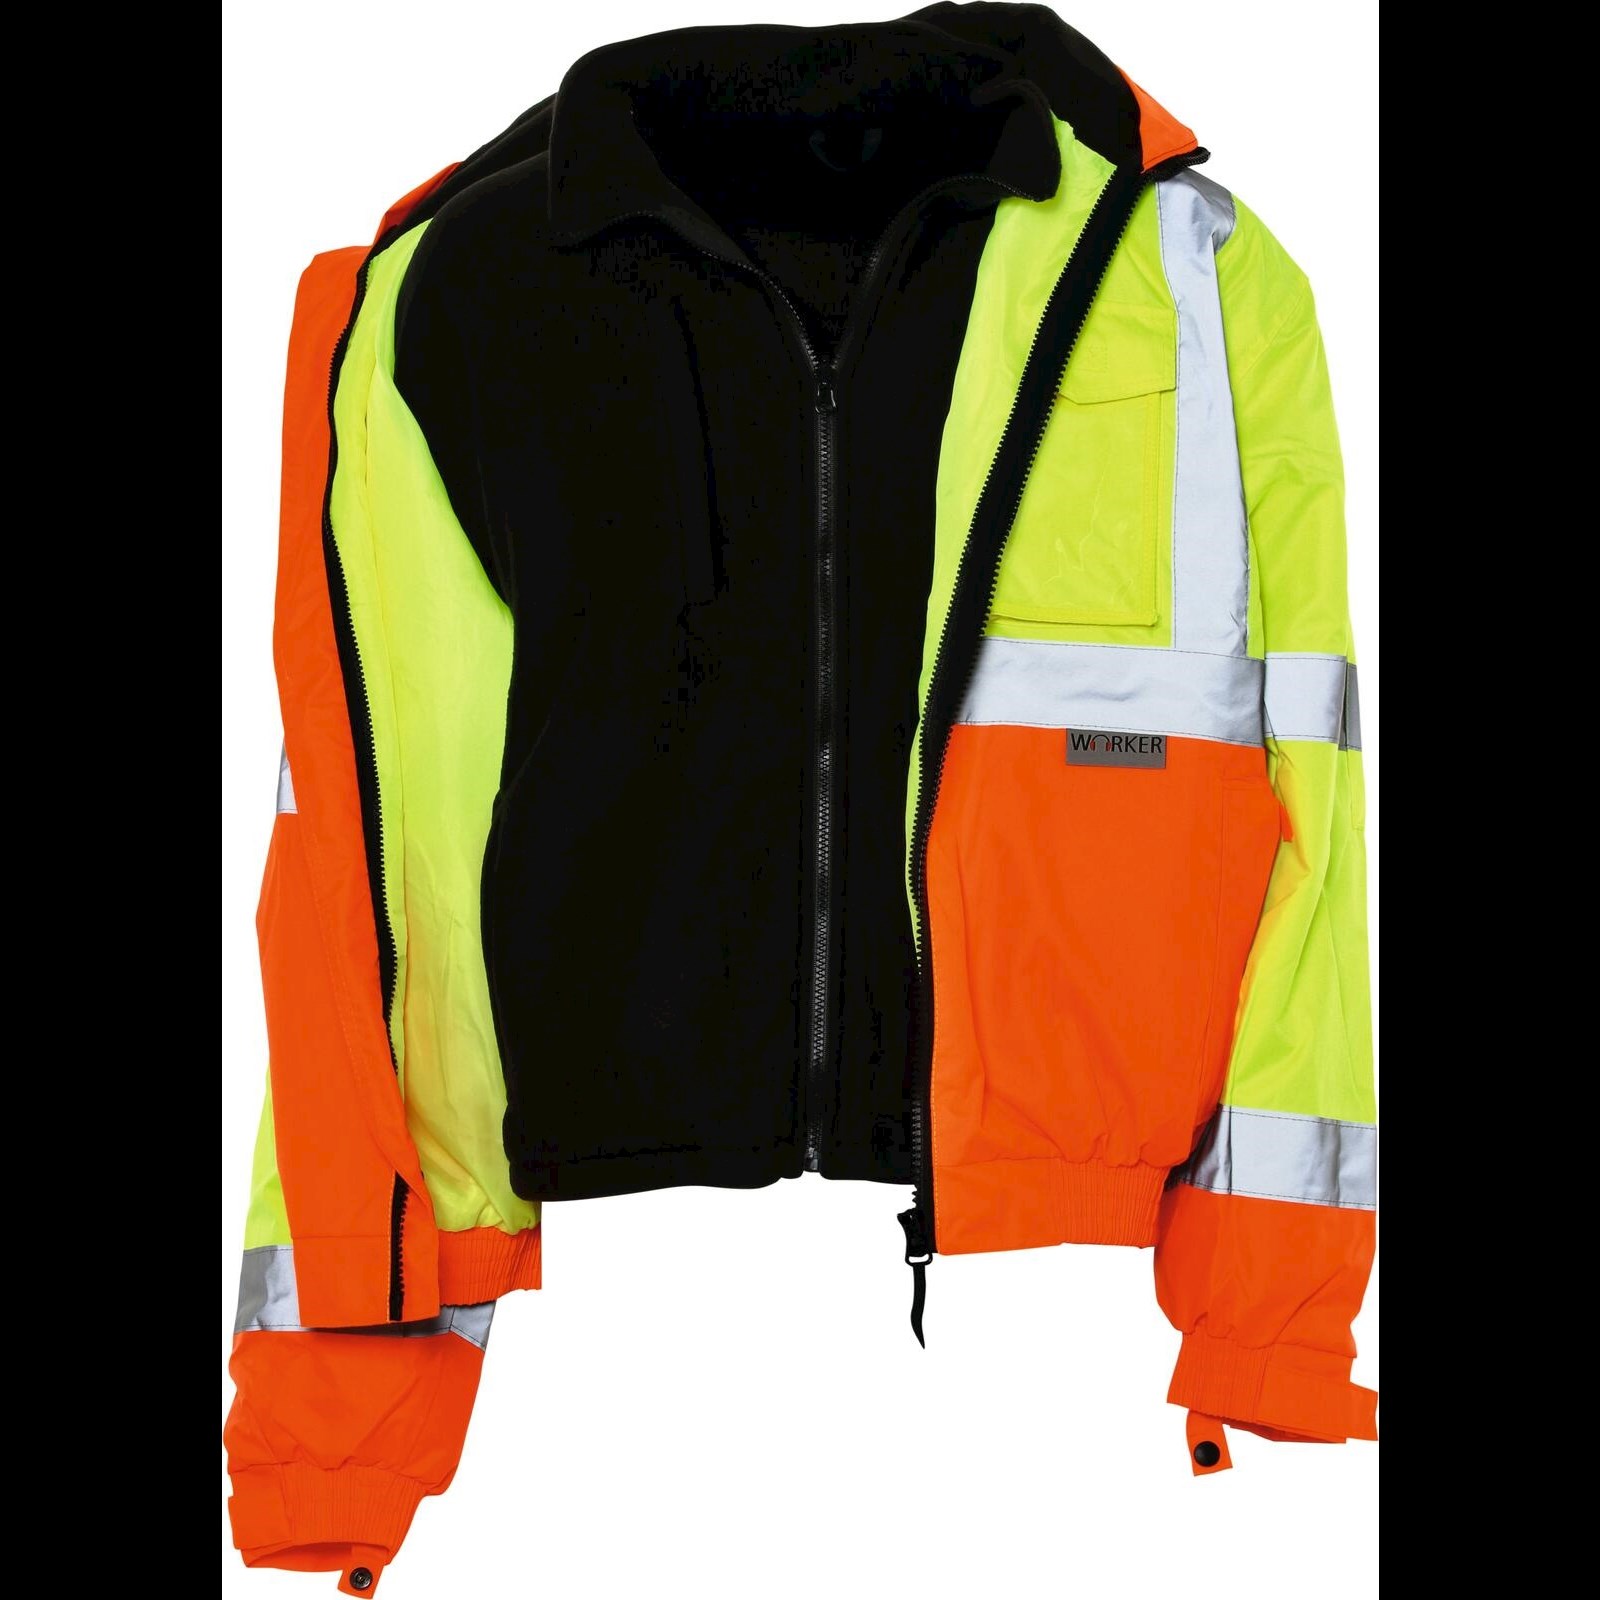 Sicherheitsjacke gelb/orange kaufen - Sicherheitsjacken - LANDI